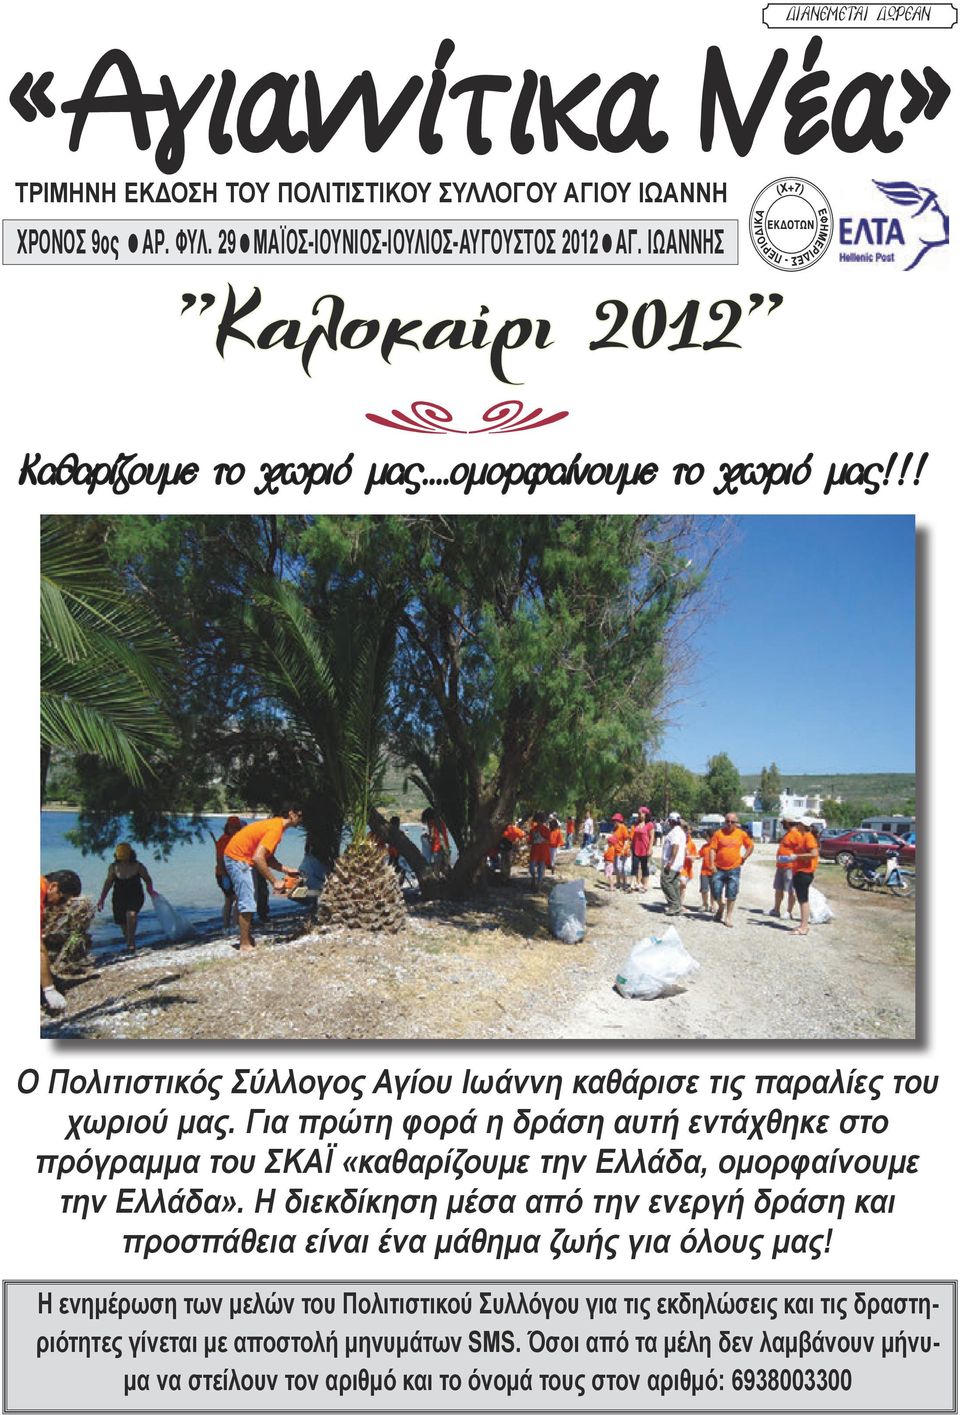 Για πρώτη φορά η δράση αυτή εντάχθηκε στο πρόγραμμα του ΣΚΑΪ «καθαρίζουμε την Ελλάδα, ομορφαίνουμε την Ελλάδα».